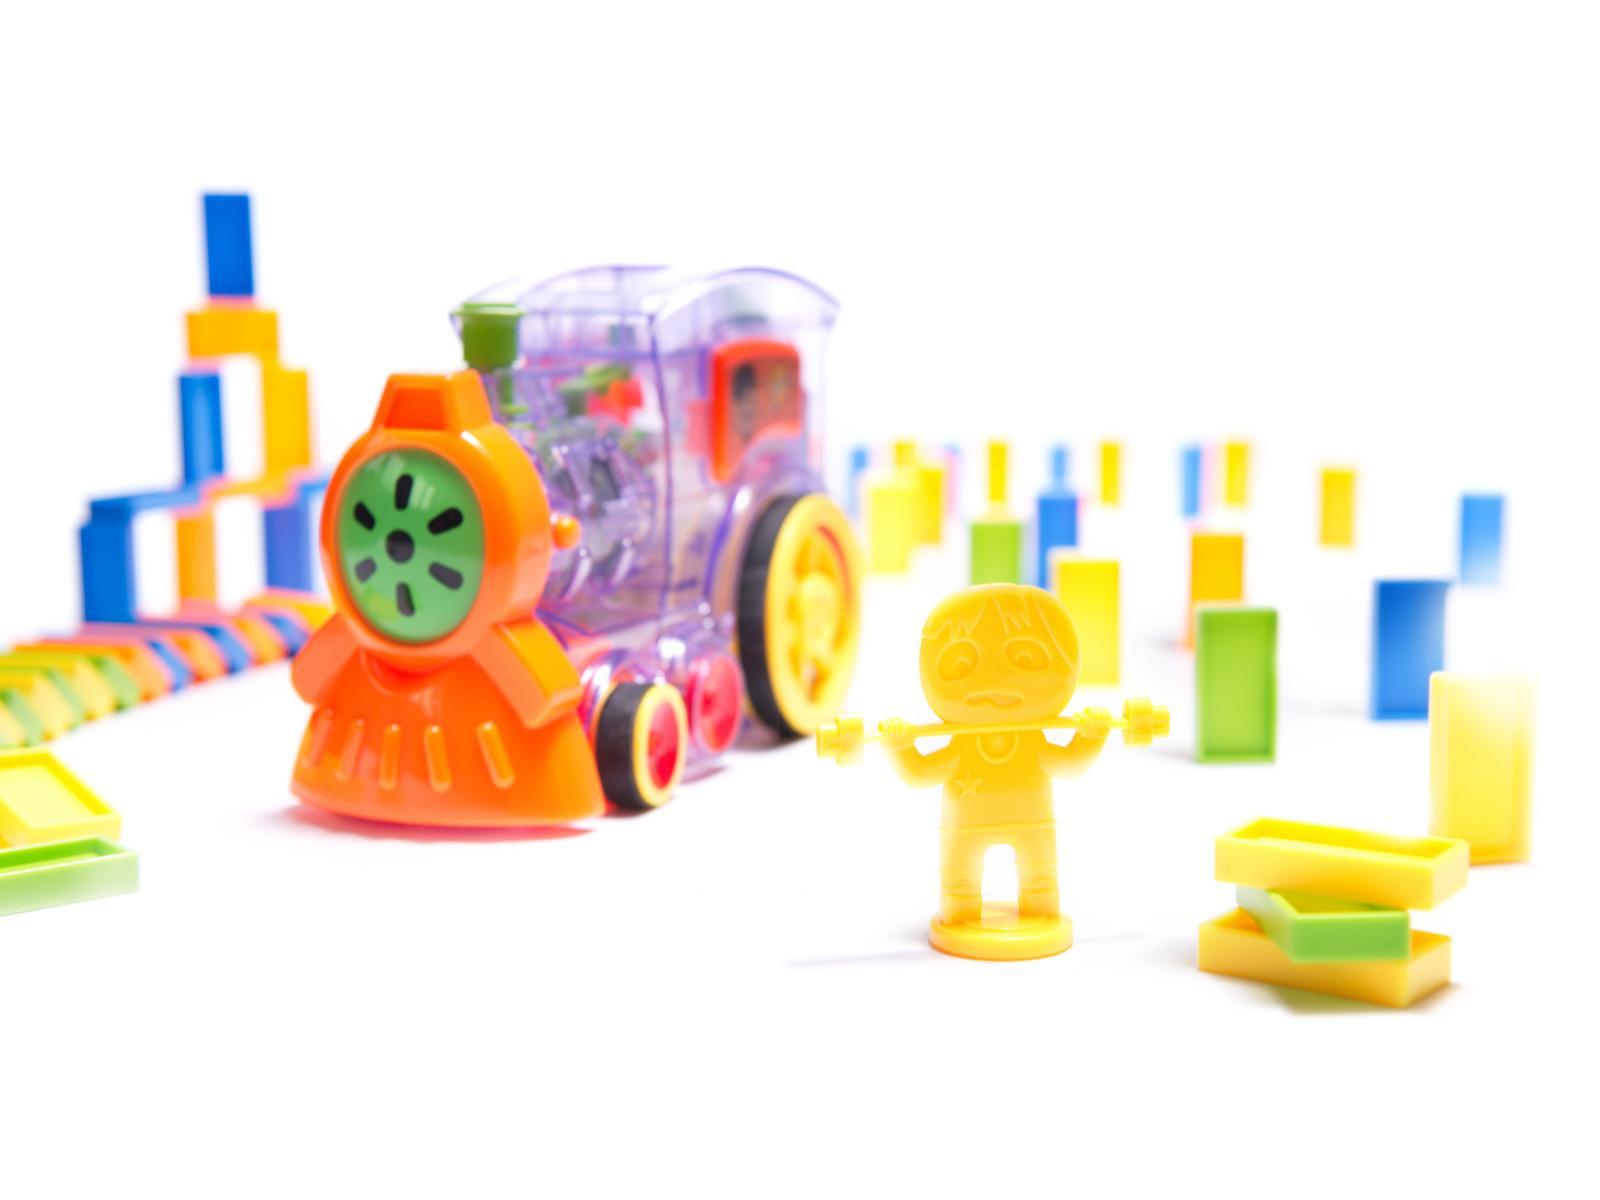 Pociąg Lokomotywa interaktywna układanka domino z kolejką zabawka dla dzieci 16x7x10 cm nr. 6